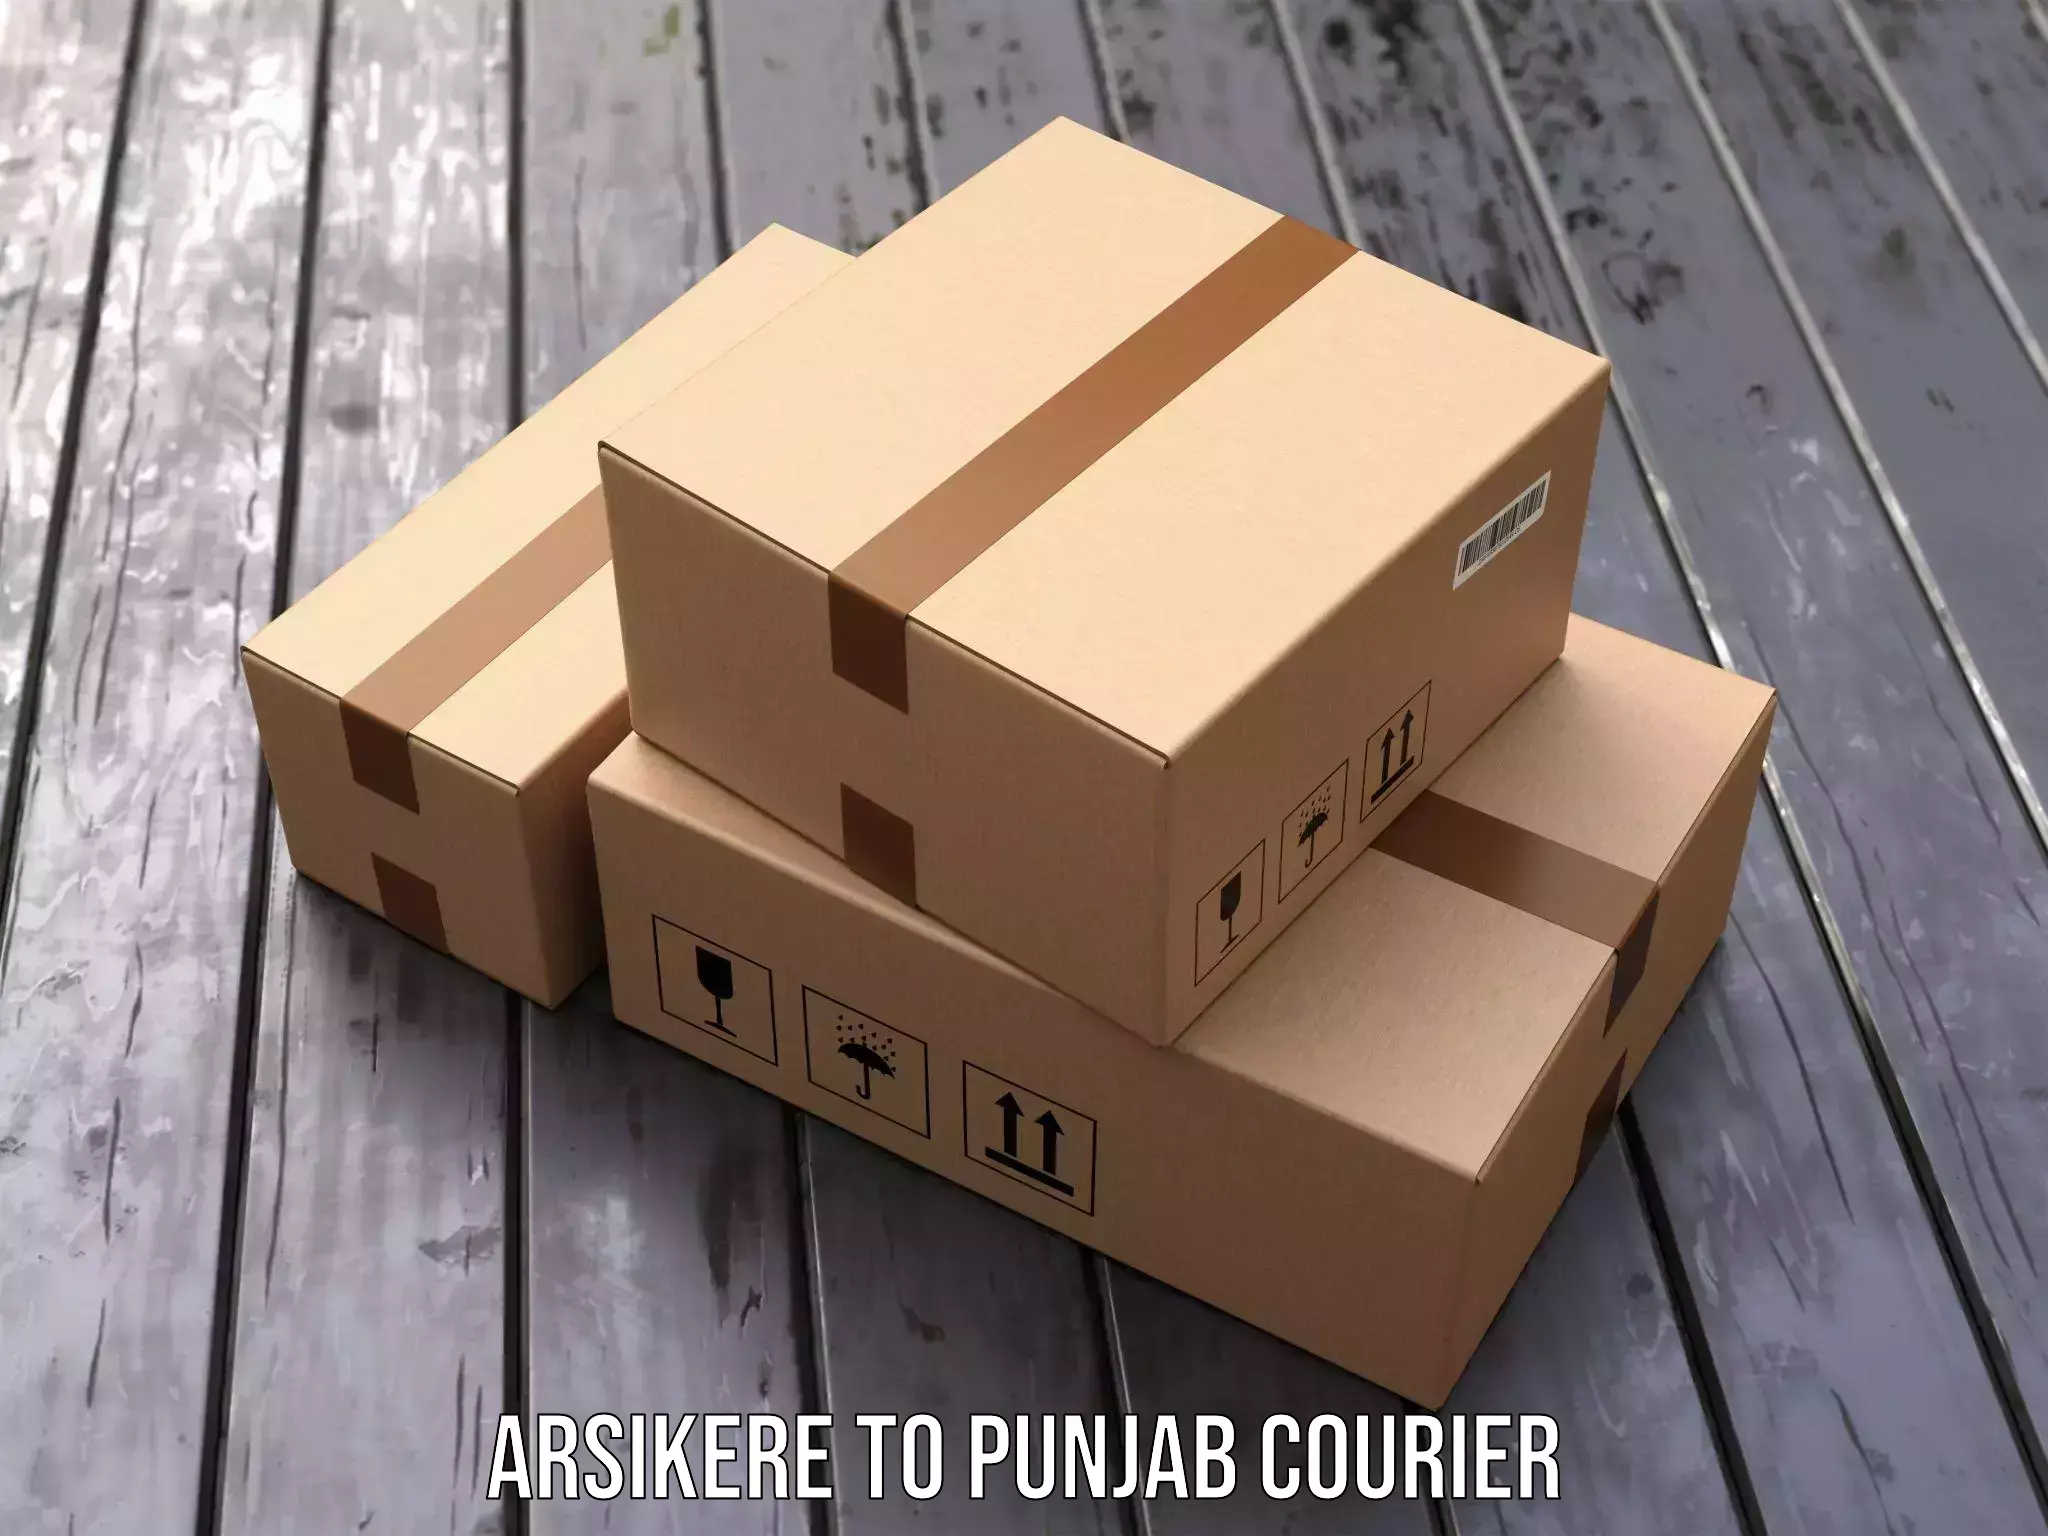 Ground shipping Arsikere to Punjab